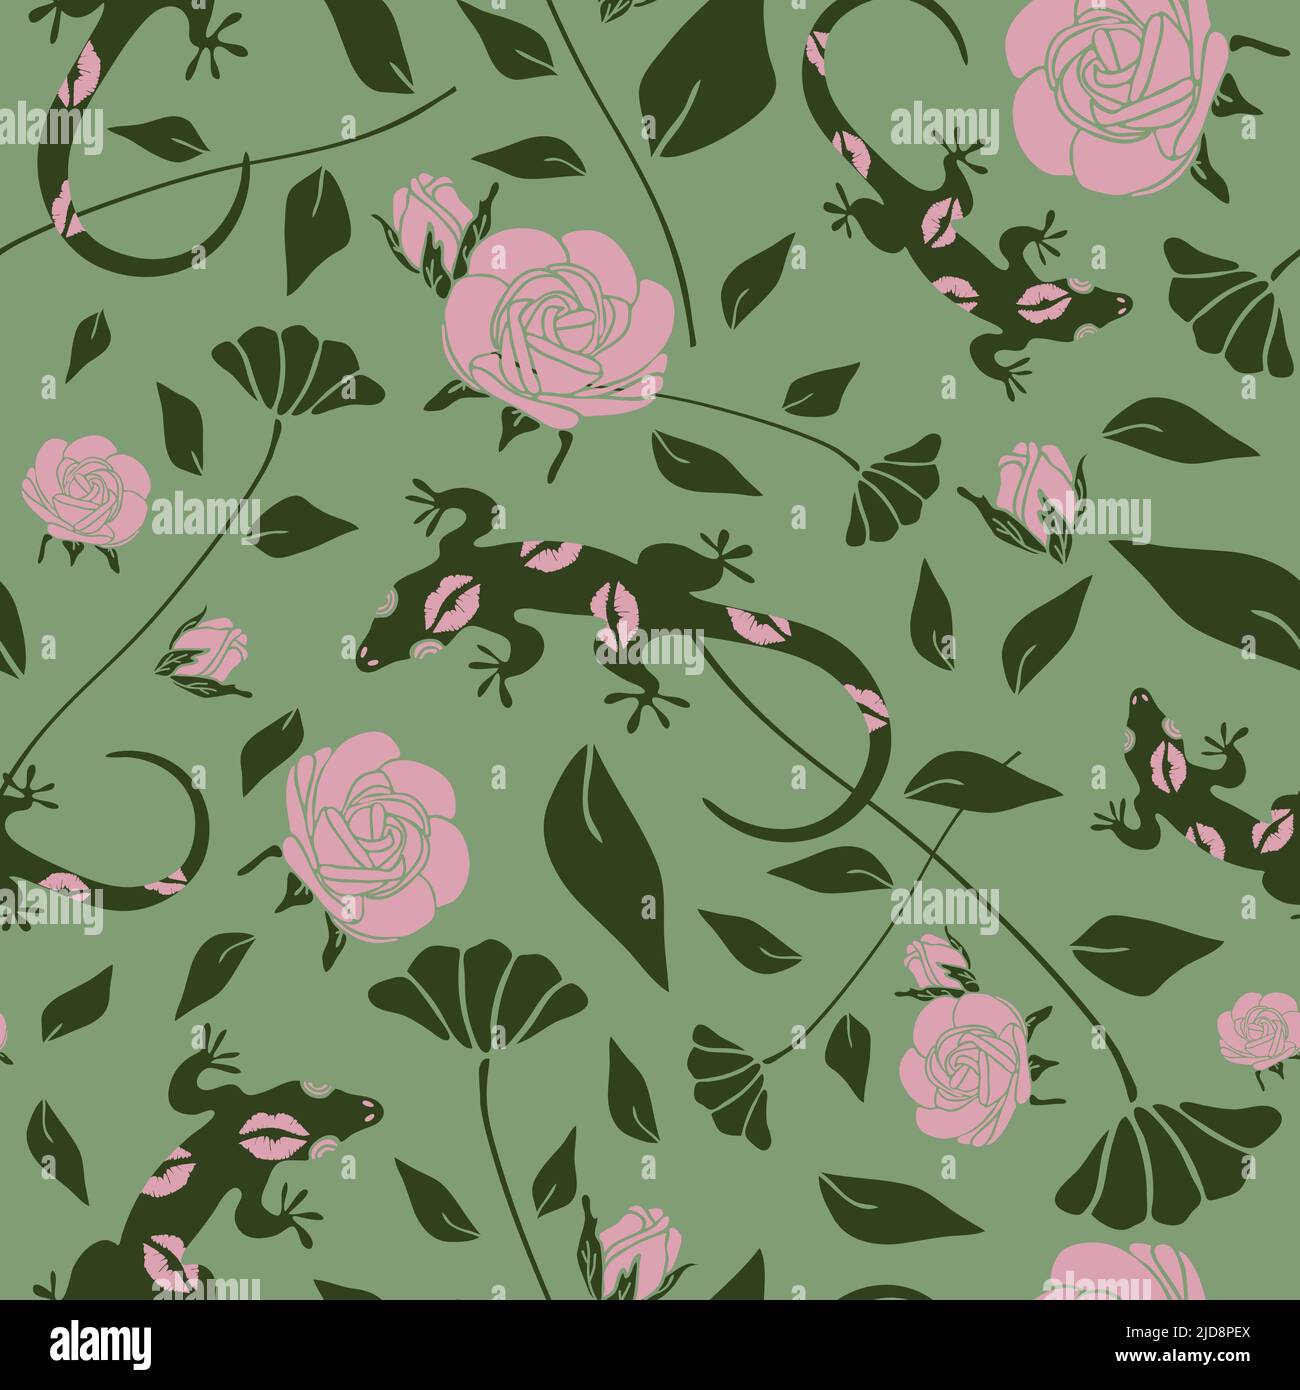 Nahtloses Vektor-Muster mit Gecko und Rosen auf grünem Hintergrund. Florales Tapetendesign mit Eidechsen. Wunderschöner Blumenstrauch. Stock Vektor